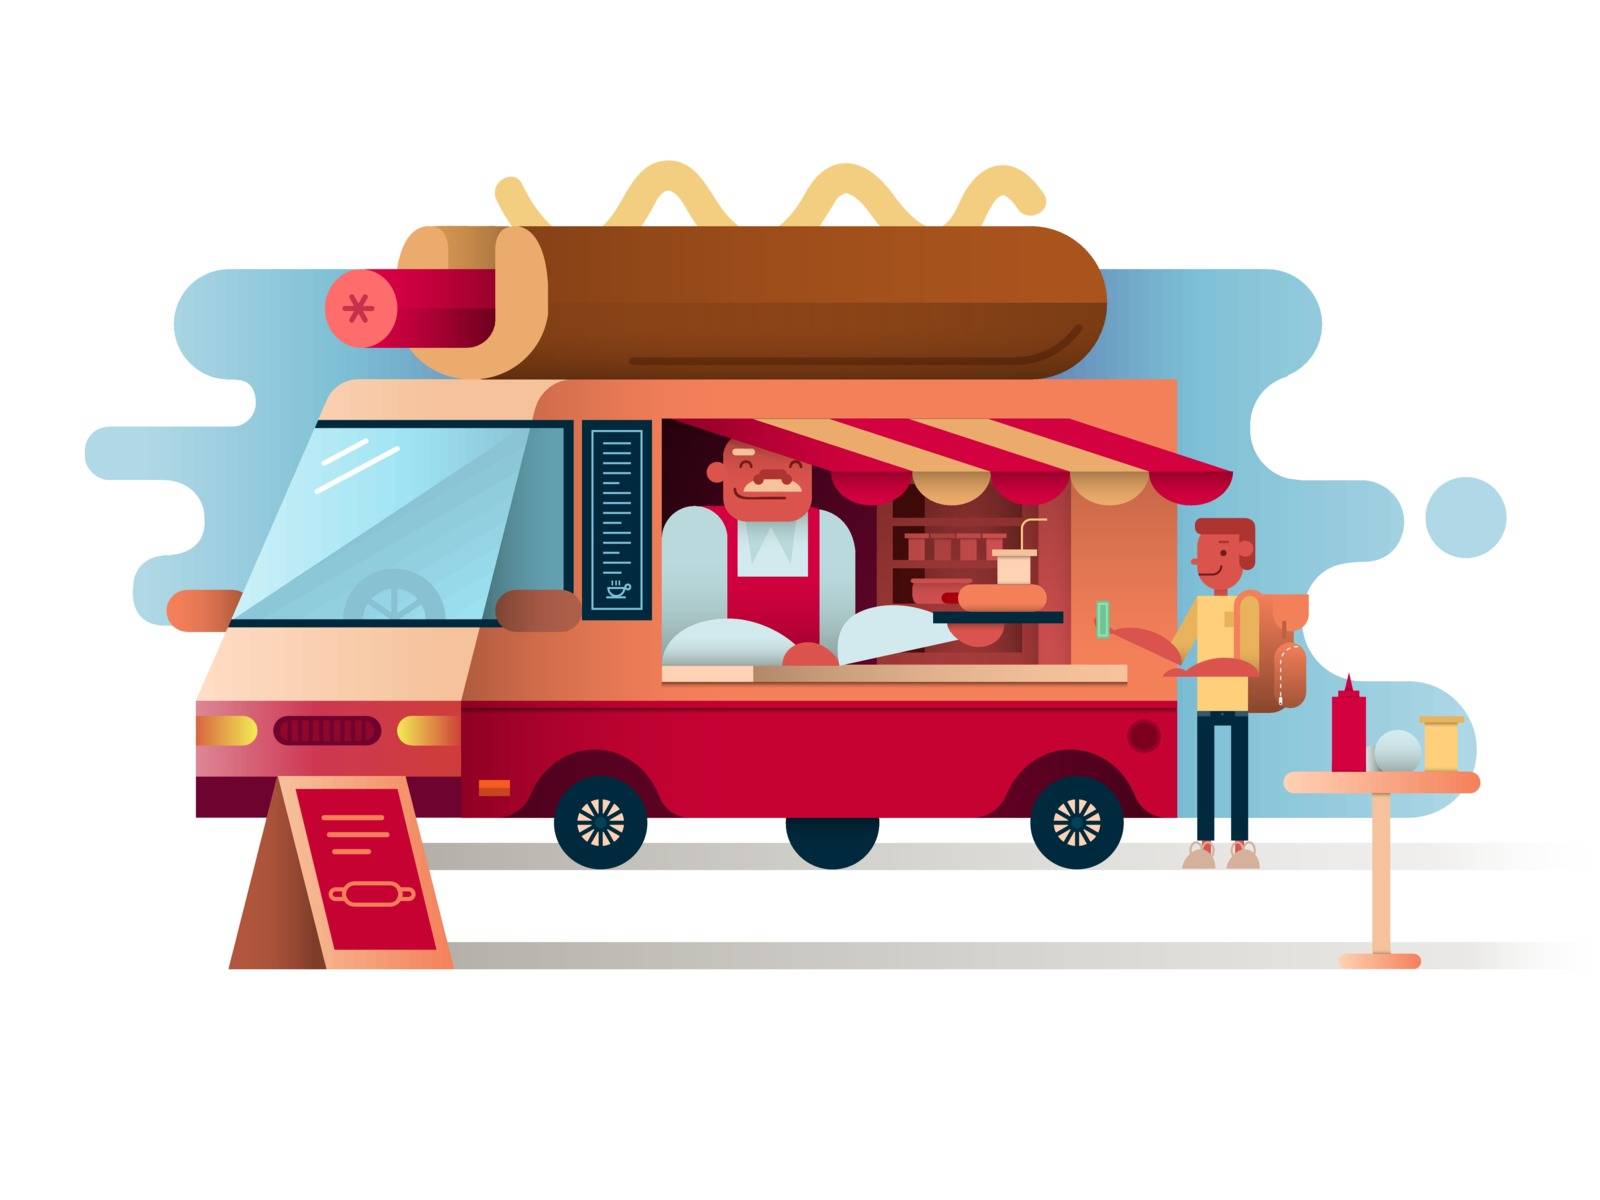 Cafe van hot dogs. Service cafe food, car restaurant, vector illustration